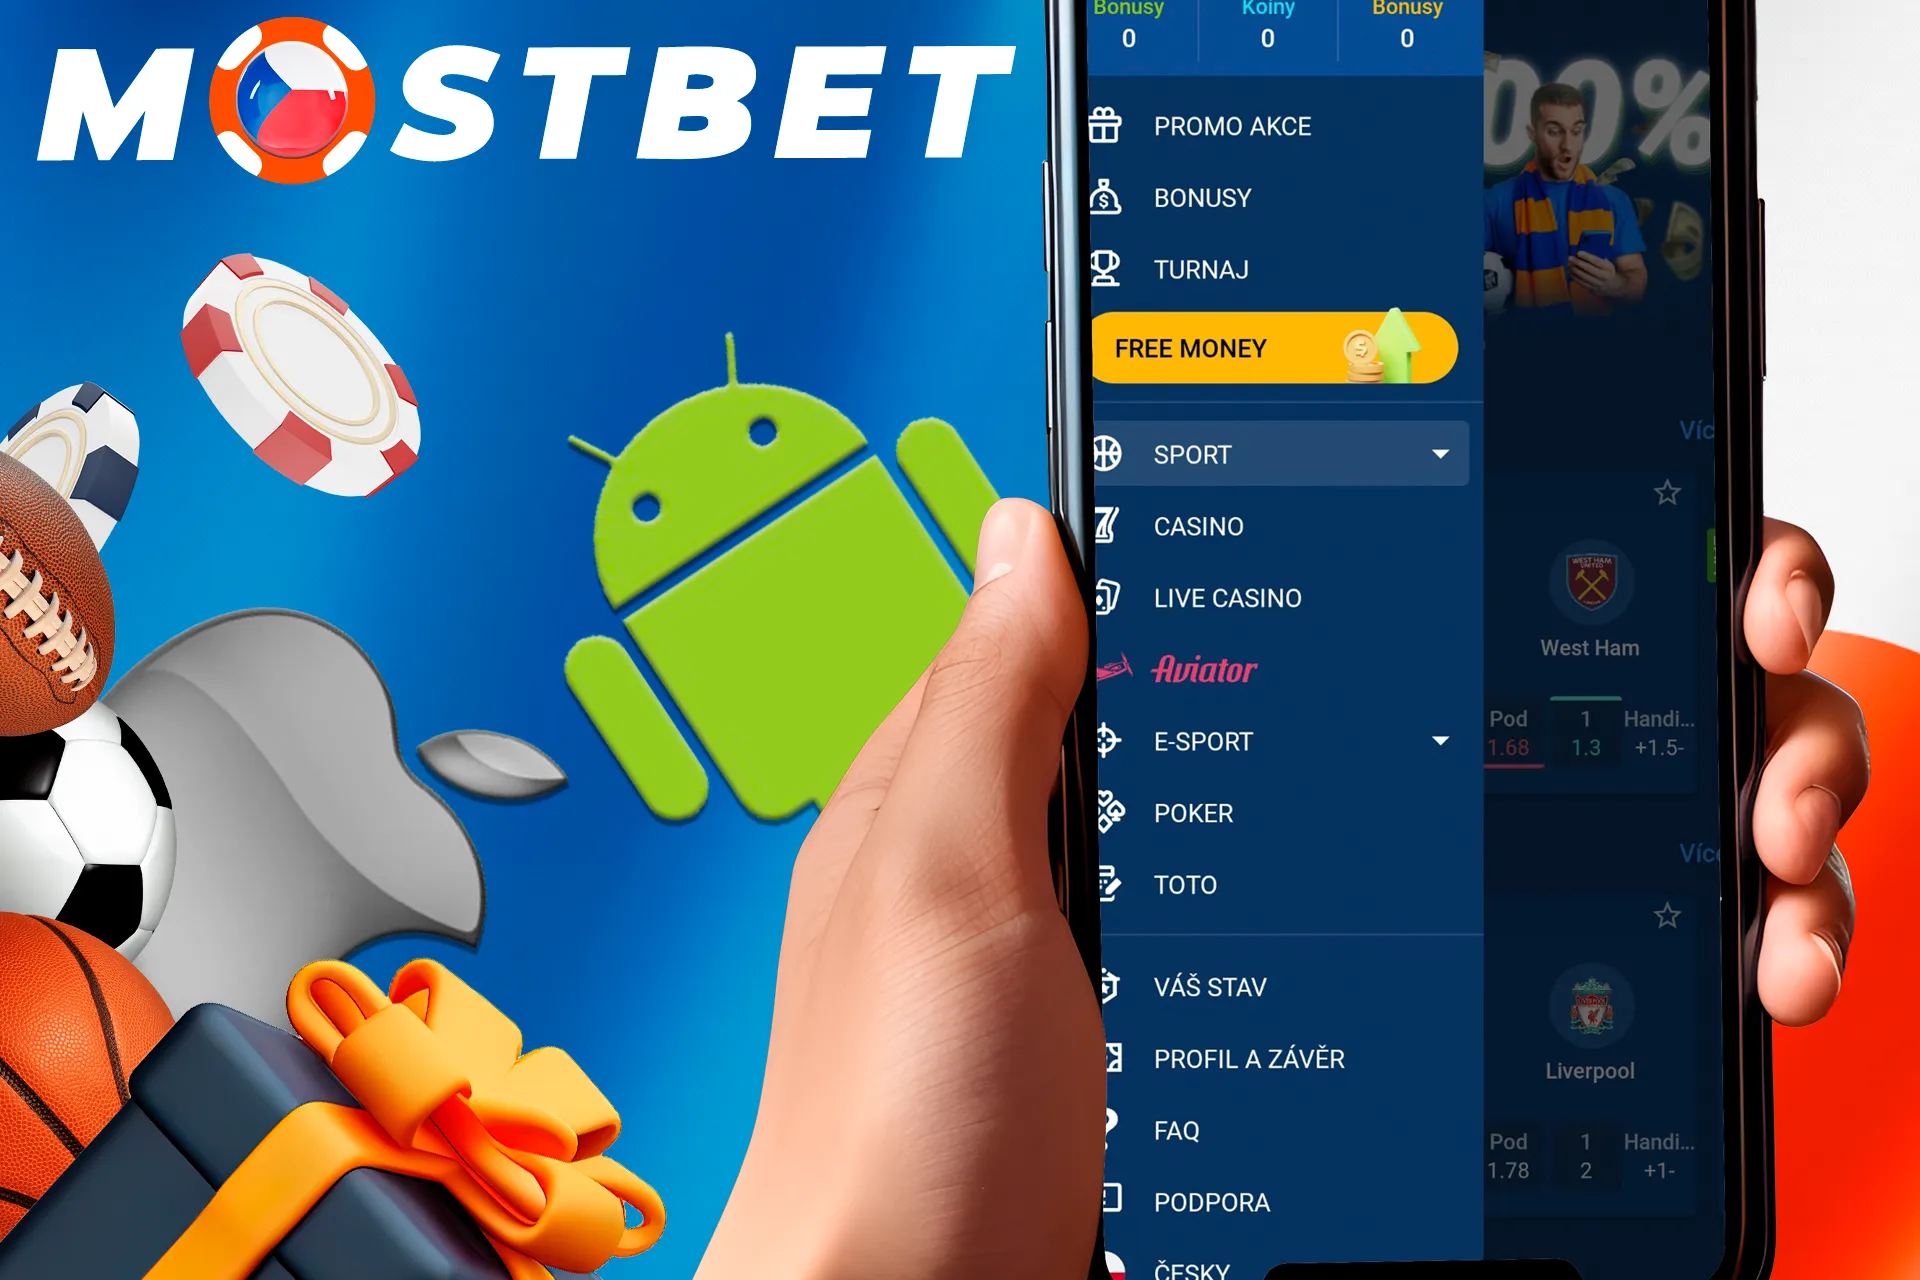 Sázky, hry, bonusy v mobilní aplikaci od Mostbet